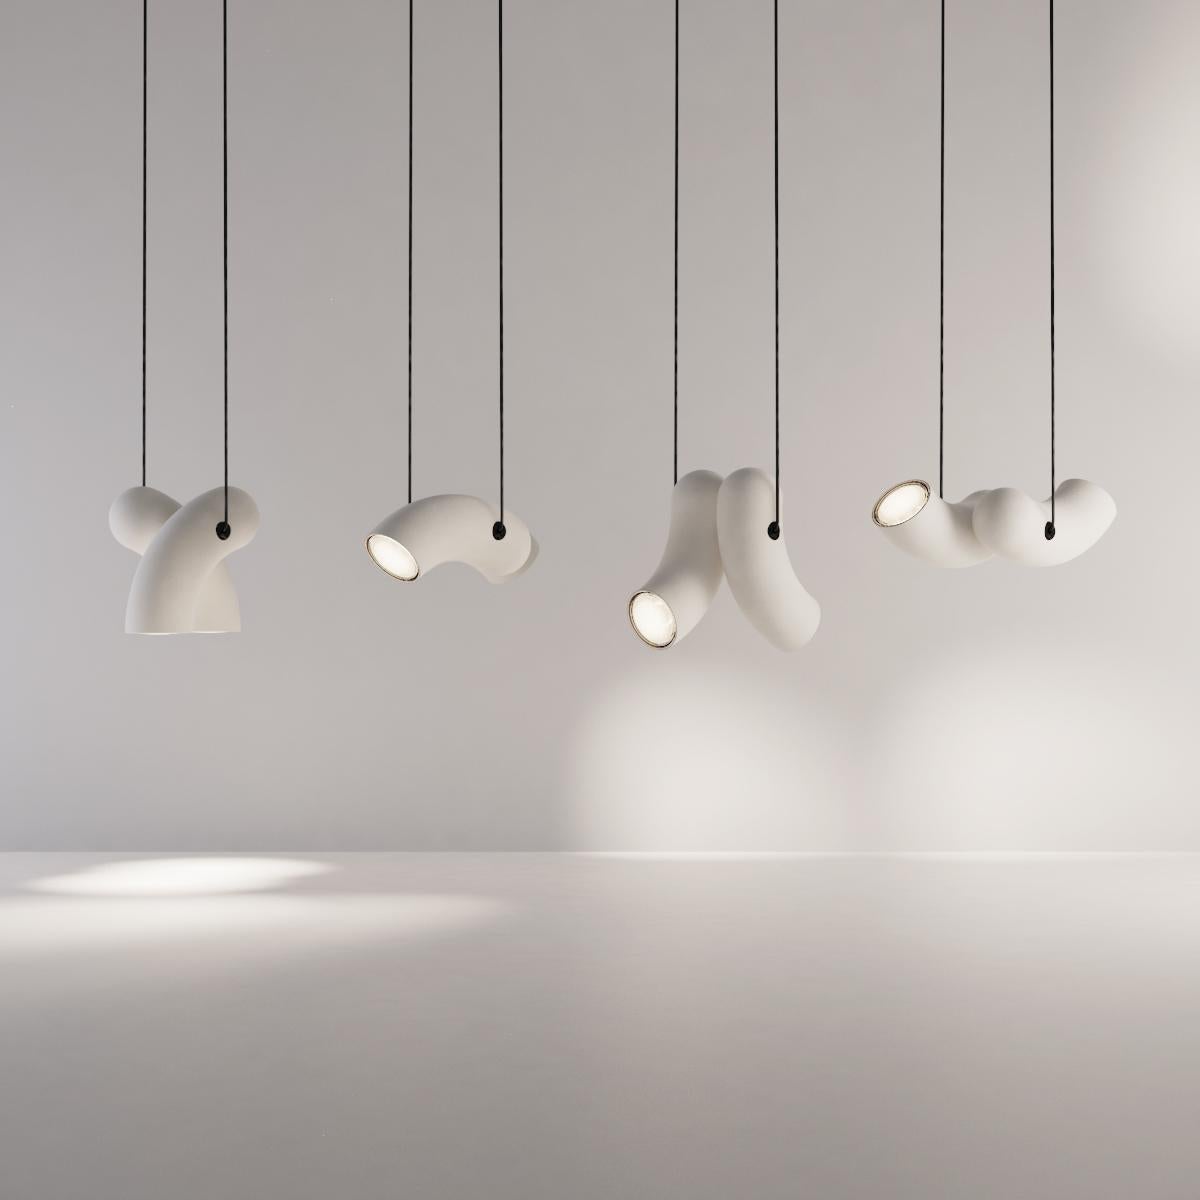 Canadian Porcelain Hyphen Pendant Lamp by Studio d'Armes